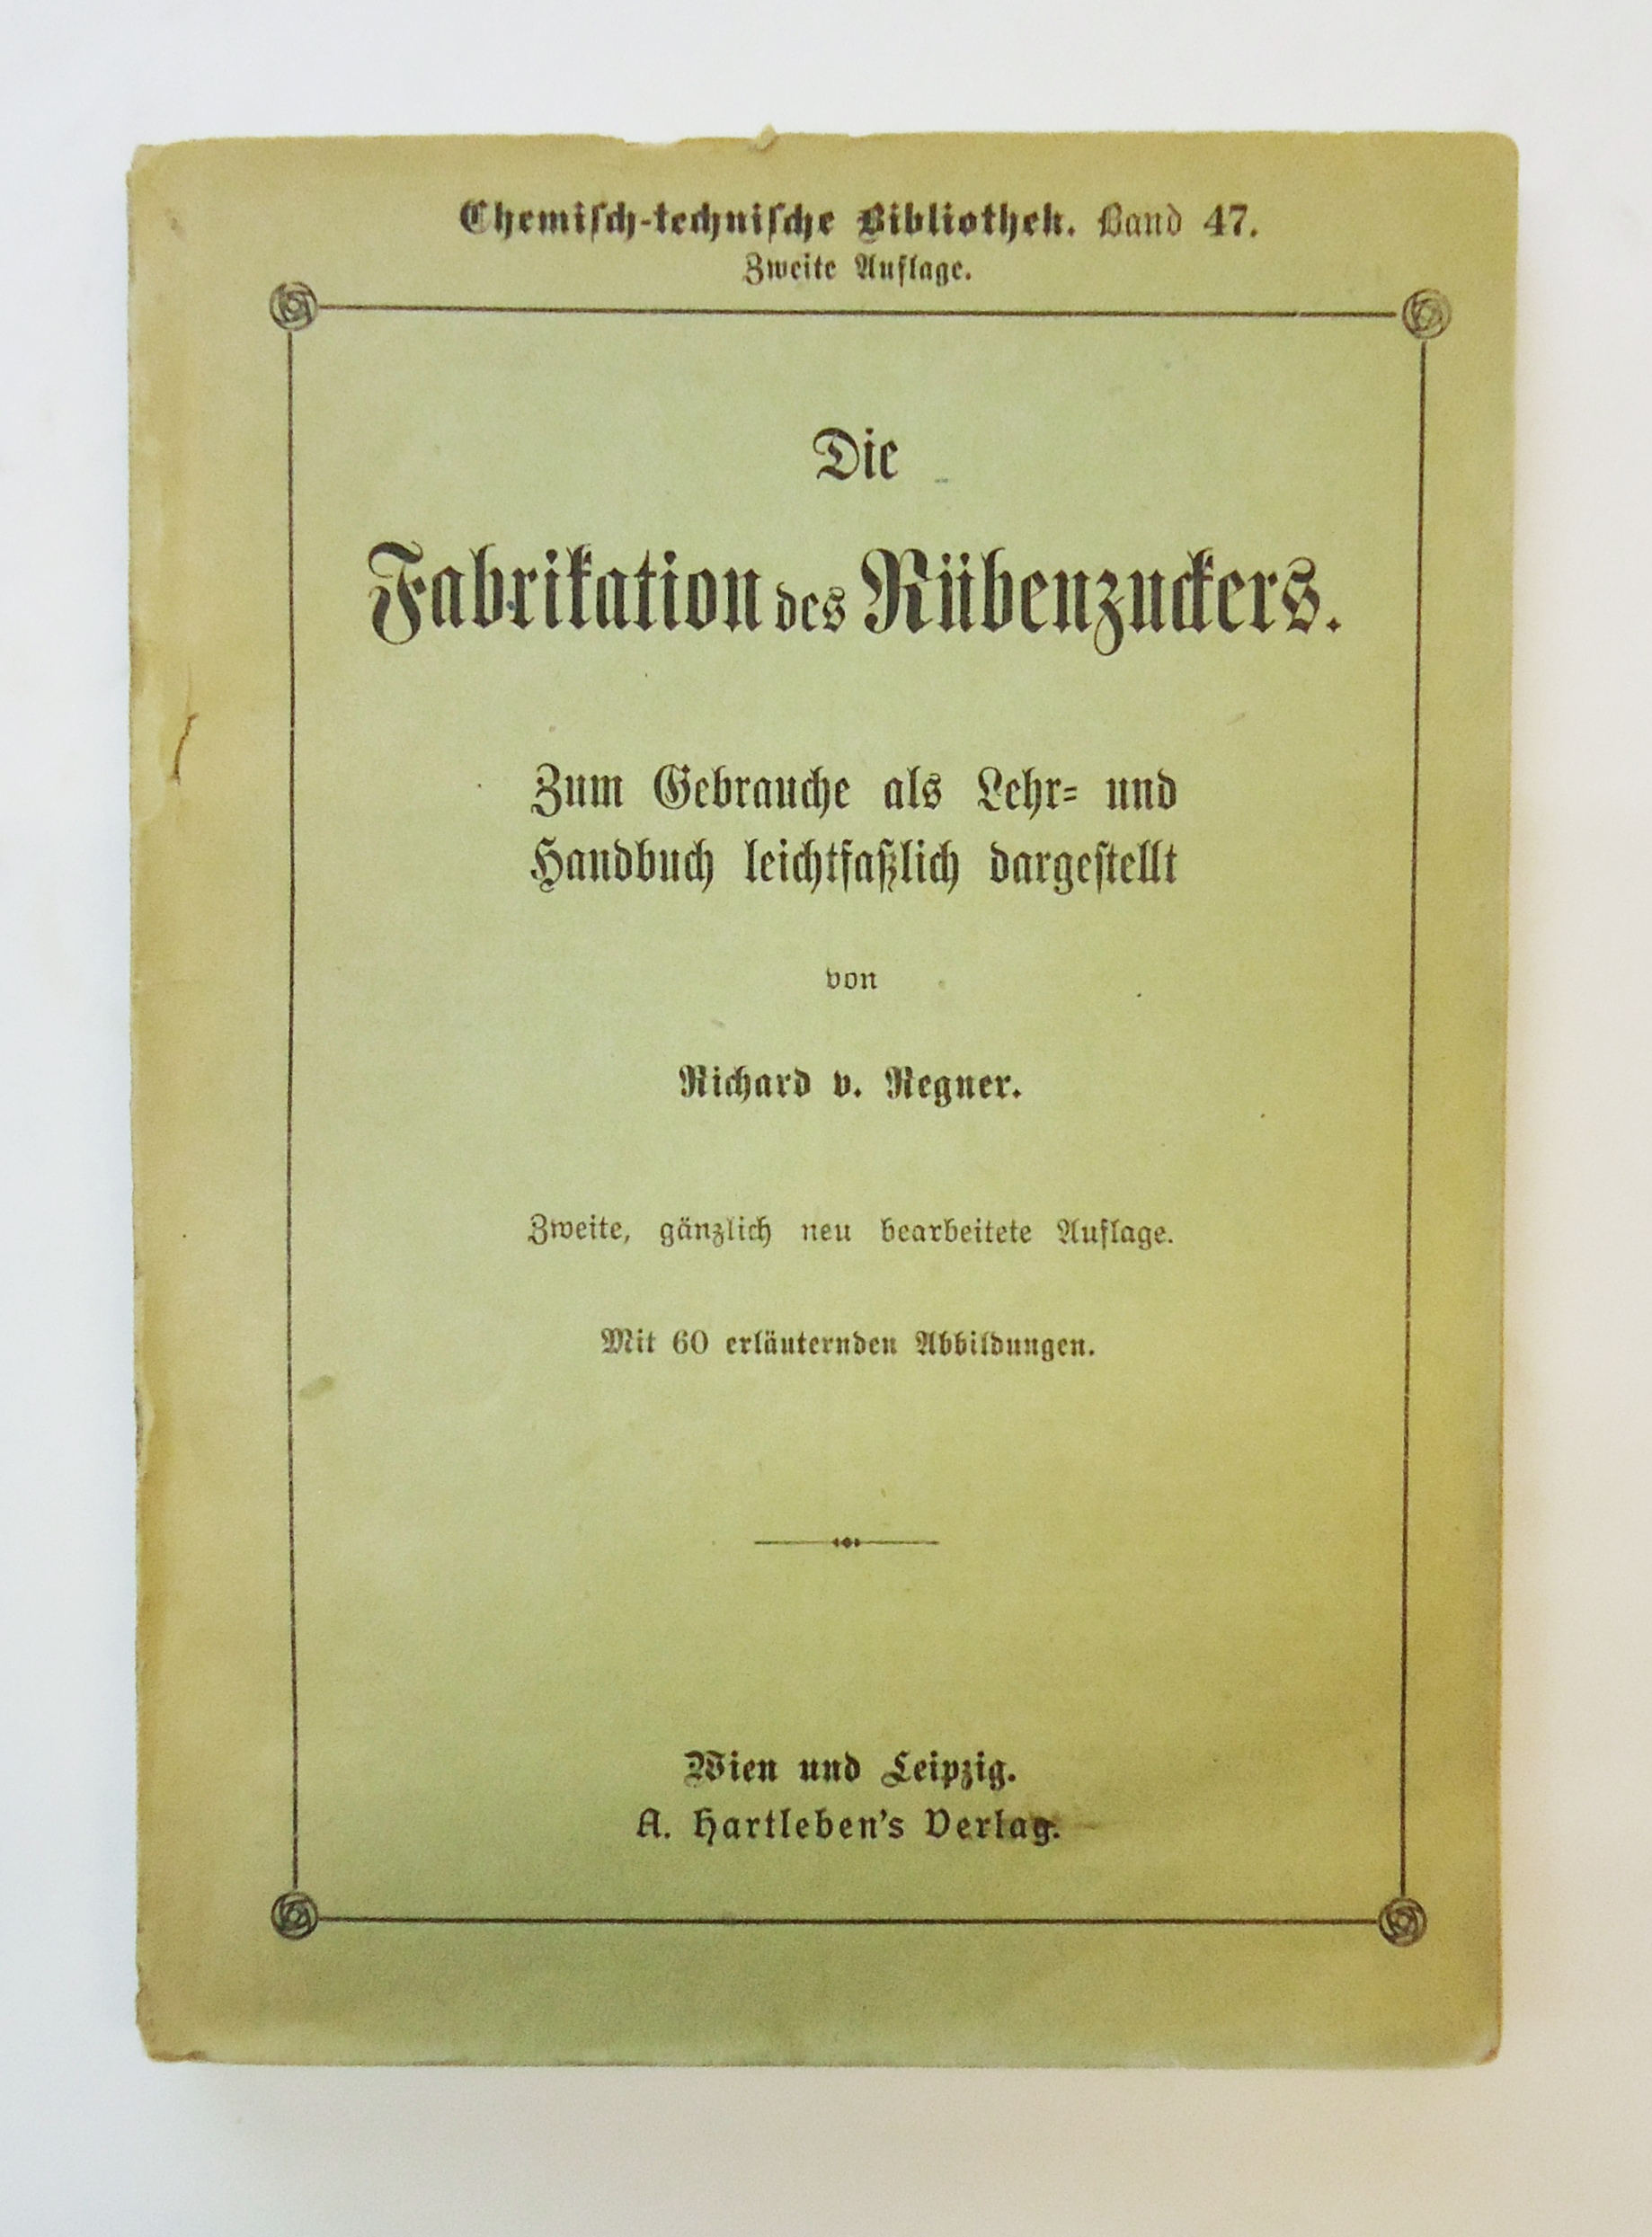 Die Fabrikation des Rübenzuckers. Zum Gebrauche als Lehr- und Handbuch leichtfaßlich dargestellt, 2., gänzlich neu bearb. Auflage.